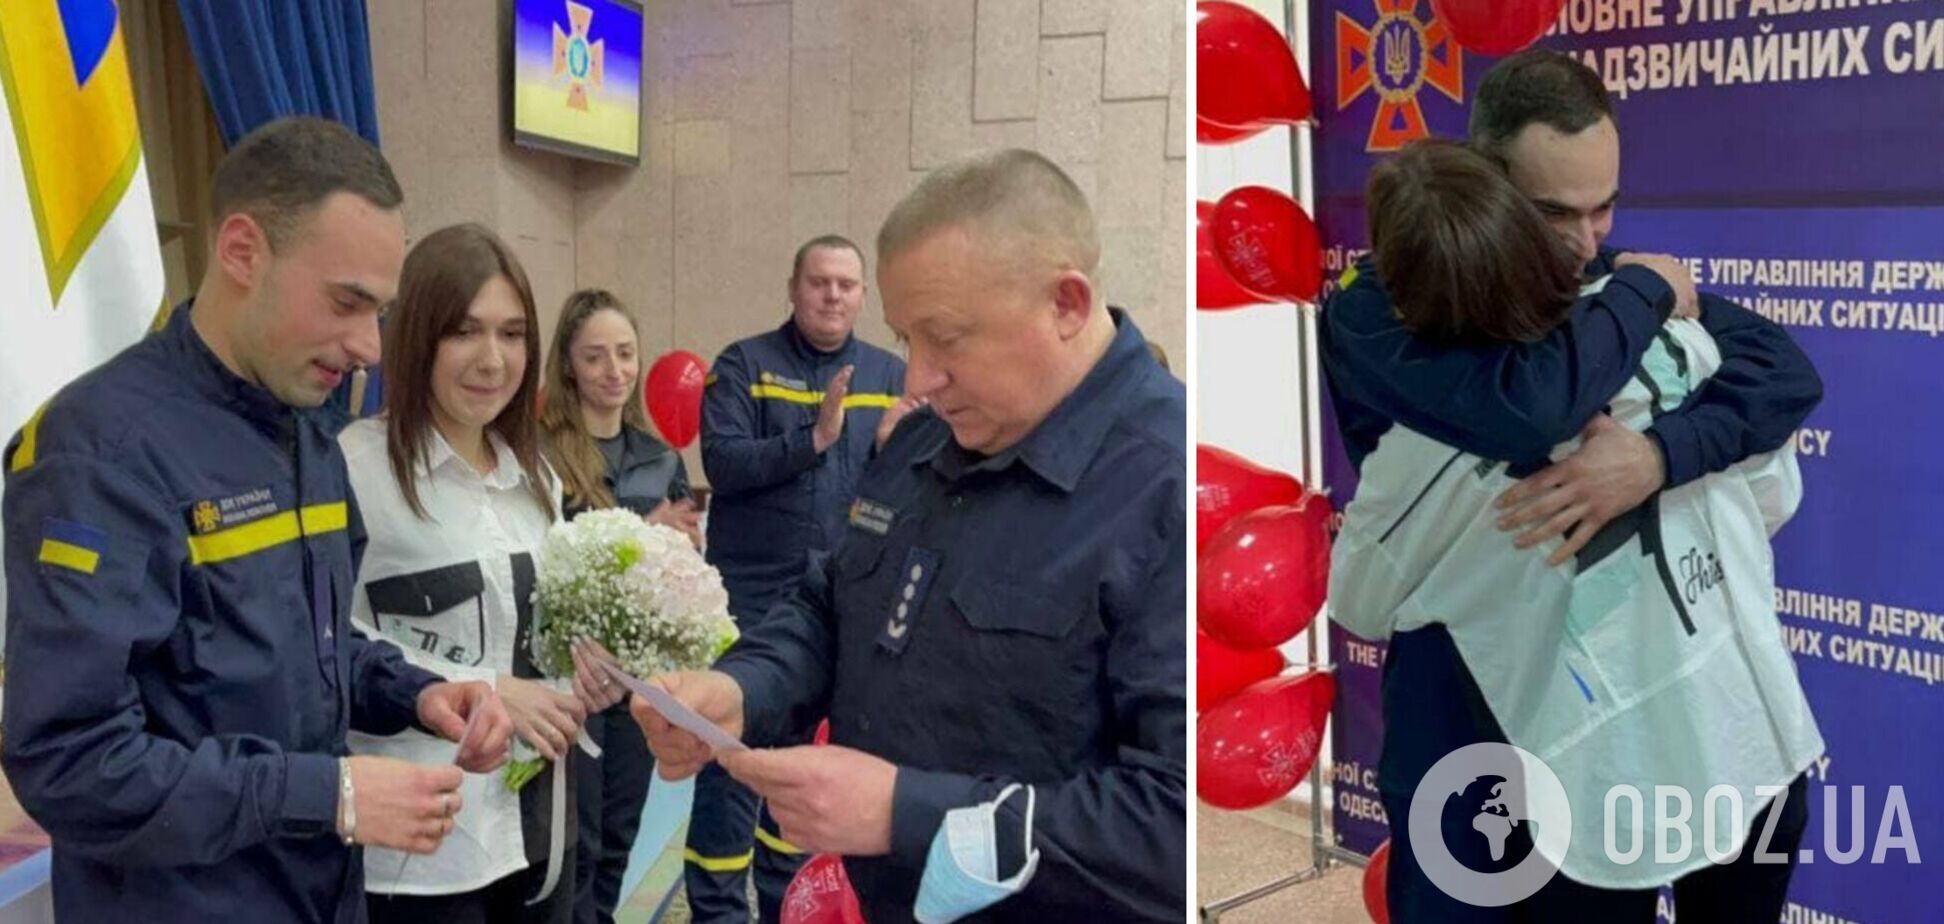 І цю країну хочуть перемогти? На Одещині рятувальники організували колезі 'воєнне' весілля. Фото